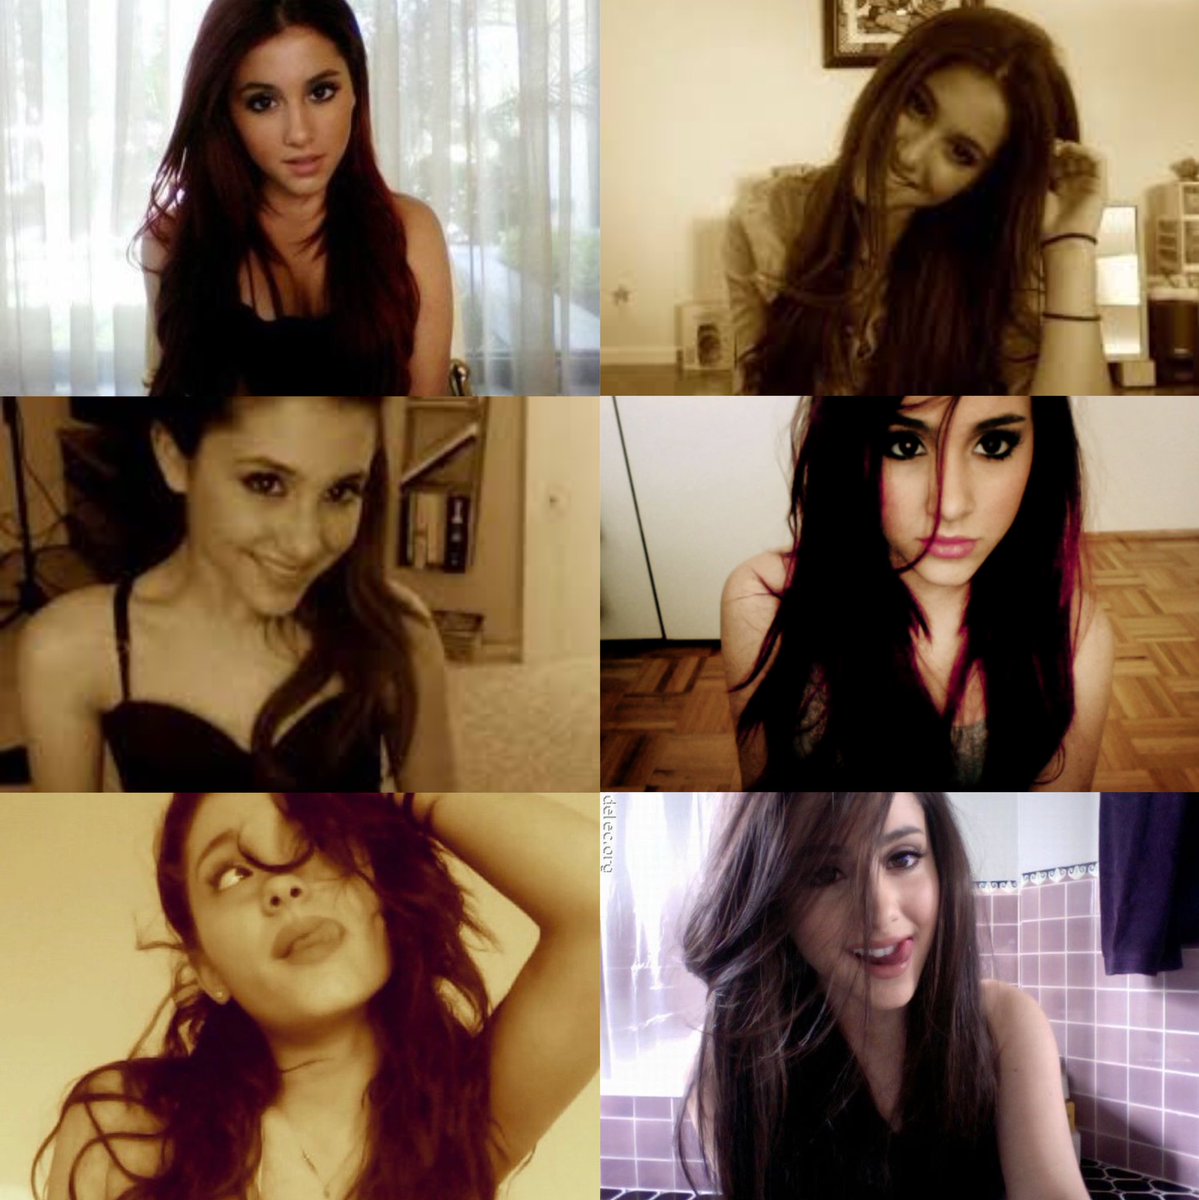 Ariana Grande's webcam selfies in 2011